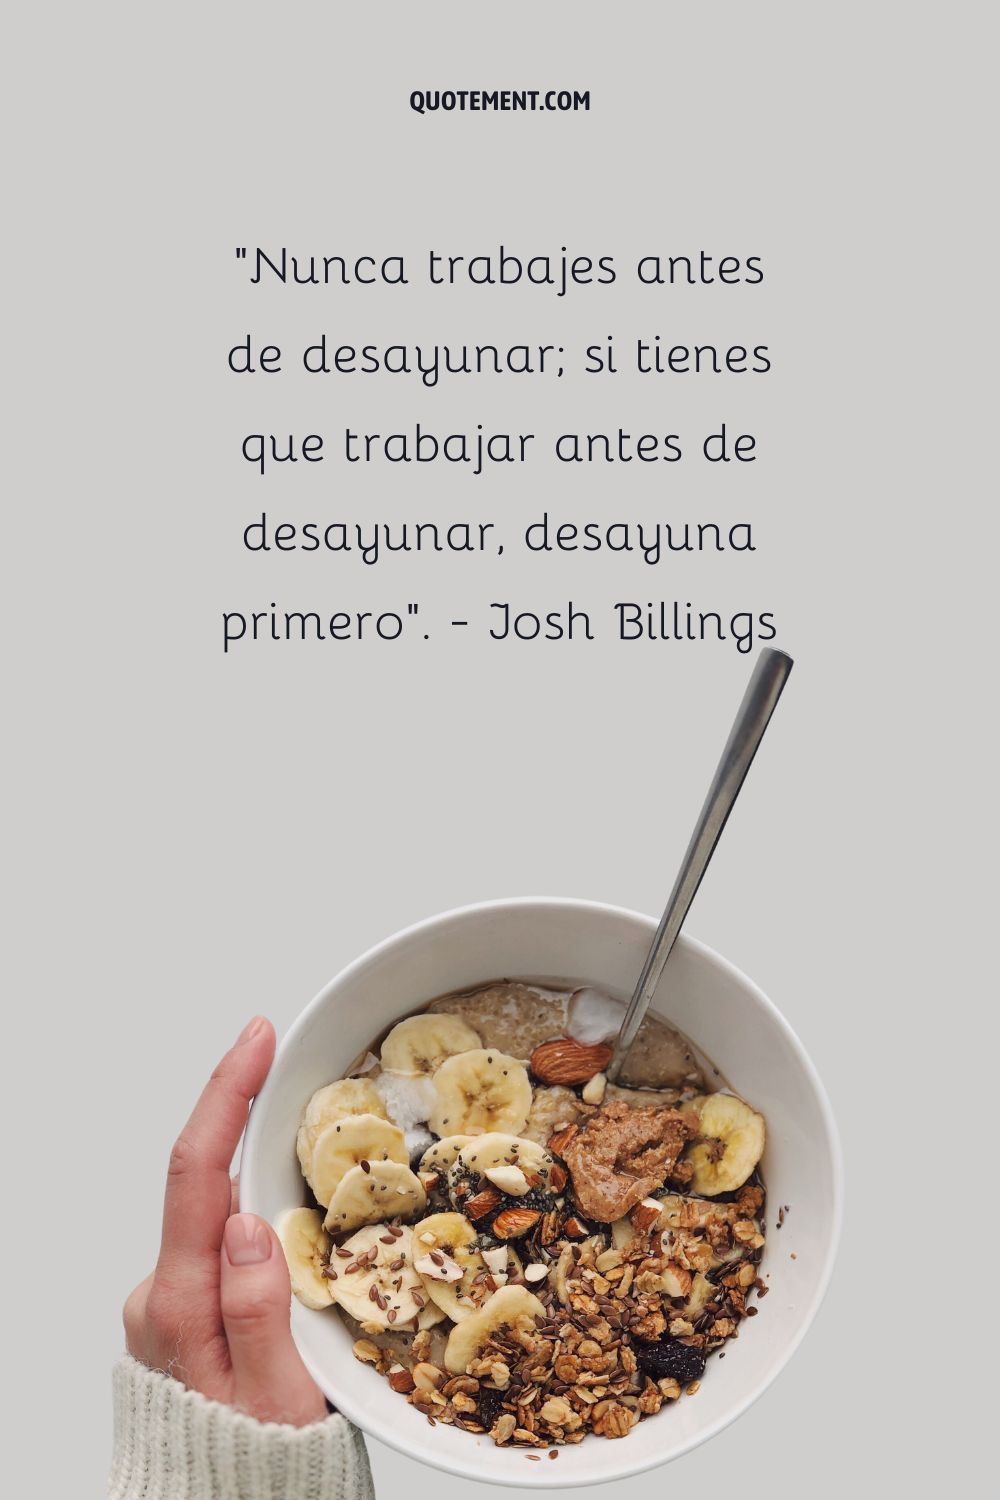 "Nunca trabajes antes de desayunar; si tienes que trabajar antes de desayunar, desayuna primero". - Josh Billings